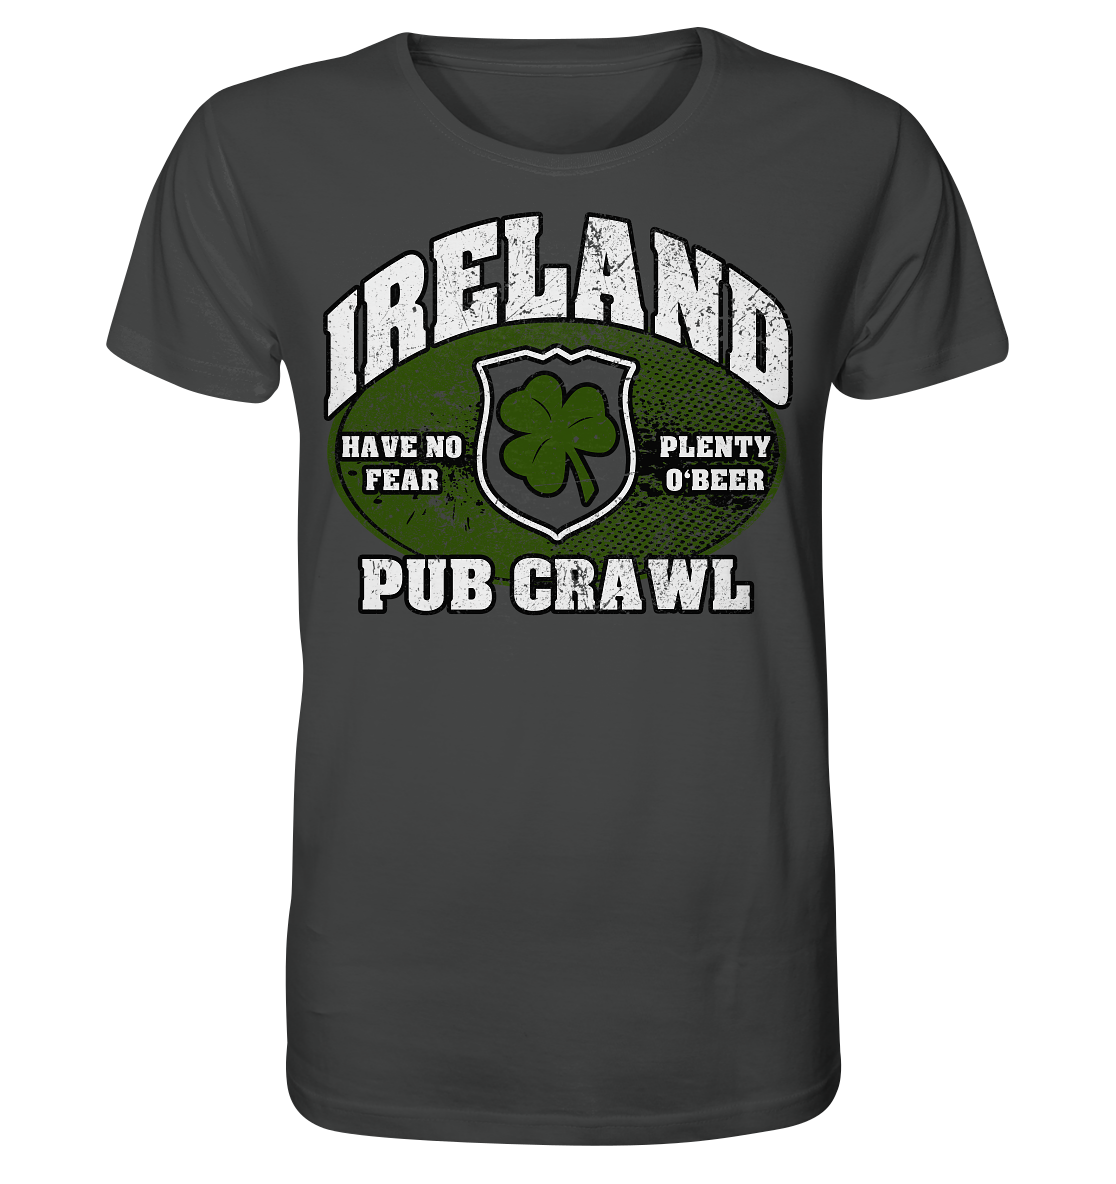 Ireland "Pub Crawl" - Organic Shirt